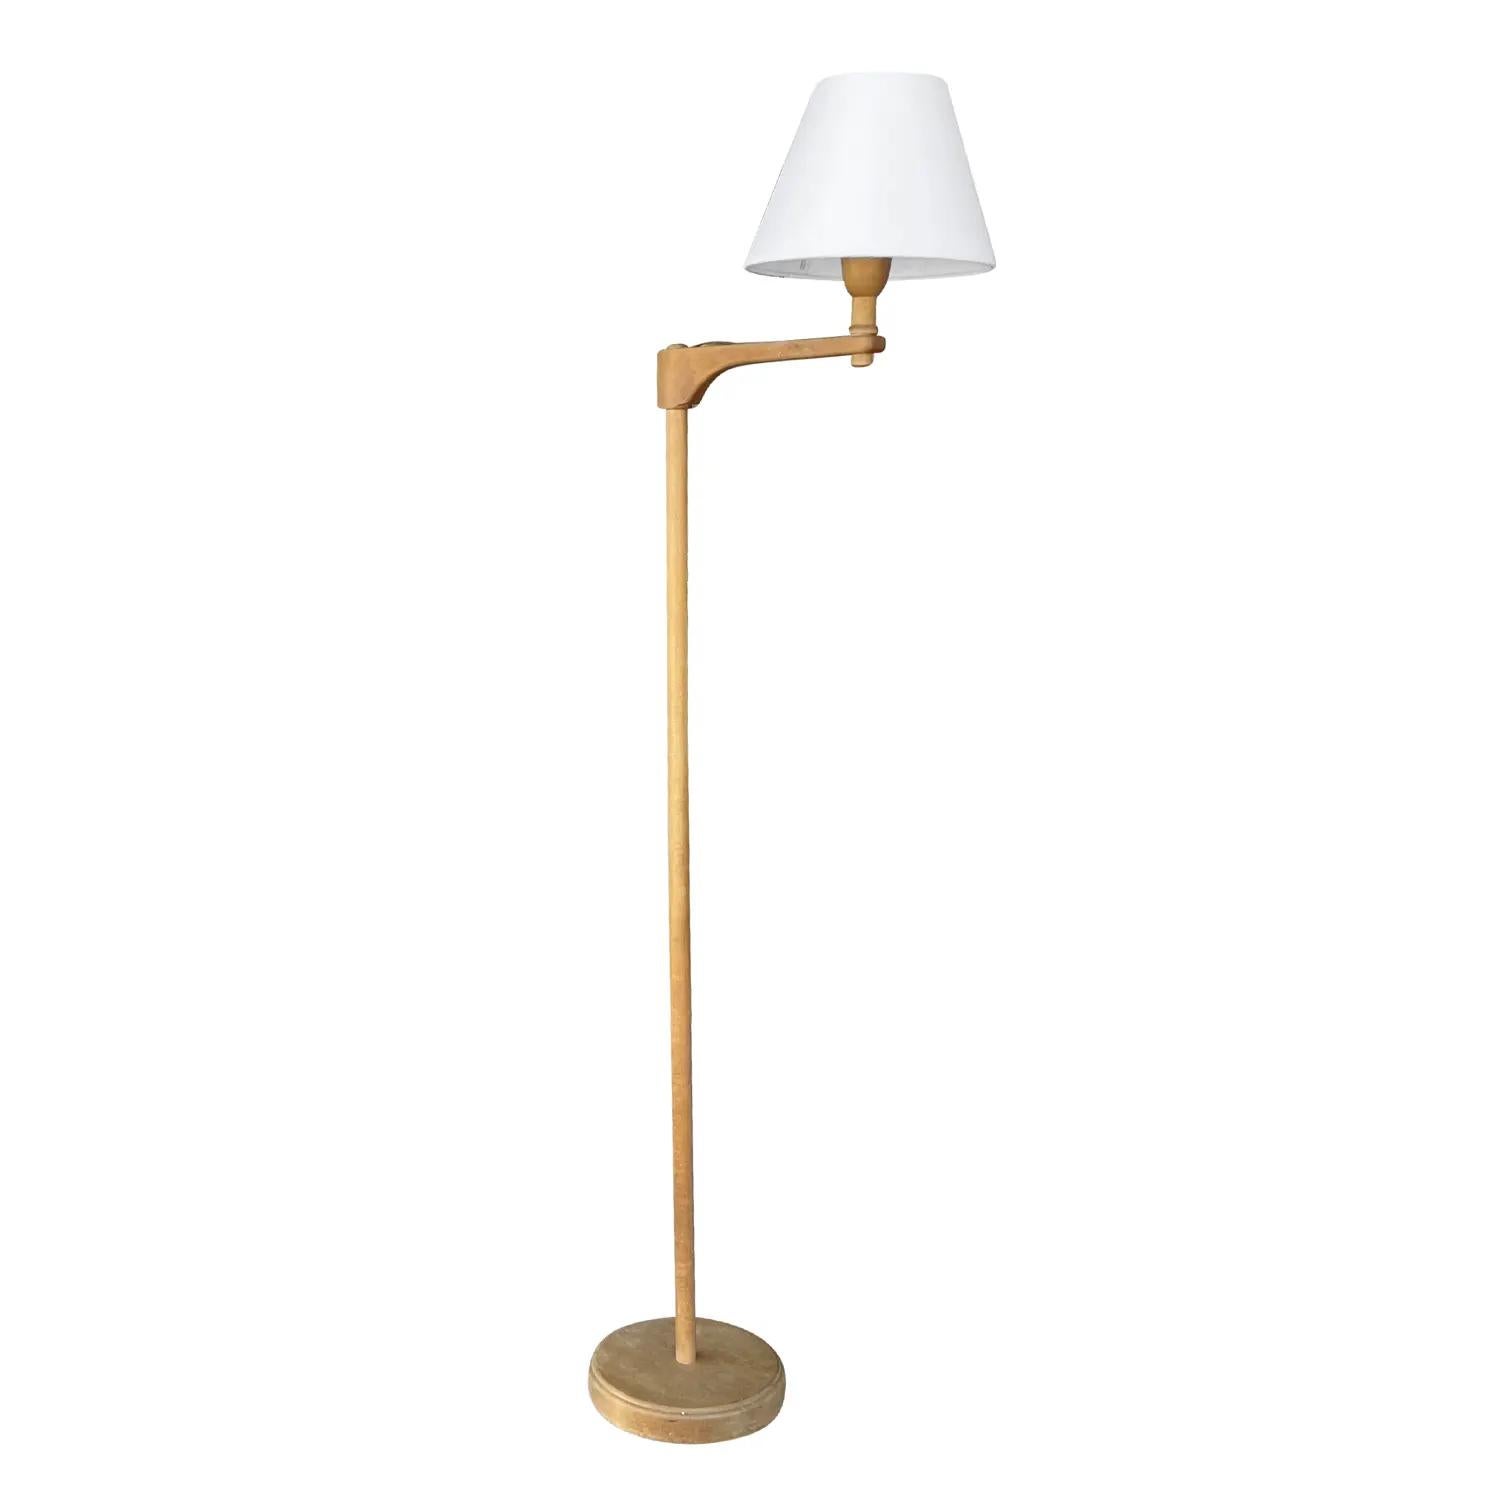 Ancien lampadaire suédois Gustavian Staken, en noyer travaillé à la main, conçu par Carl Malmsten, en bon état. La lampe de lecture scandinave est composée d'un nouveau petit abat-jour rond blanc fixé à un bras flexible et réglable, doté d'une